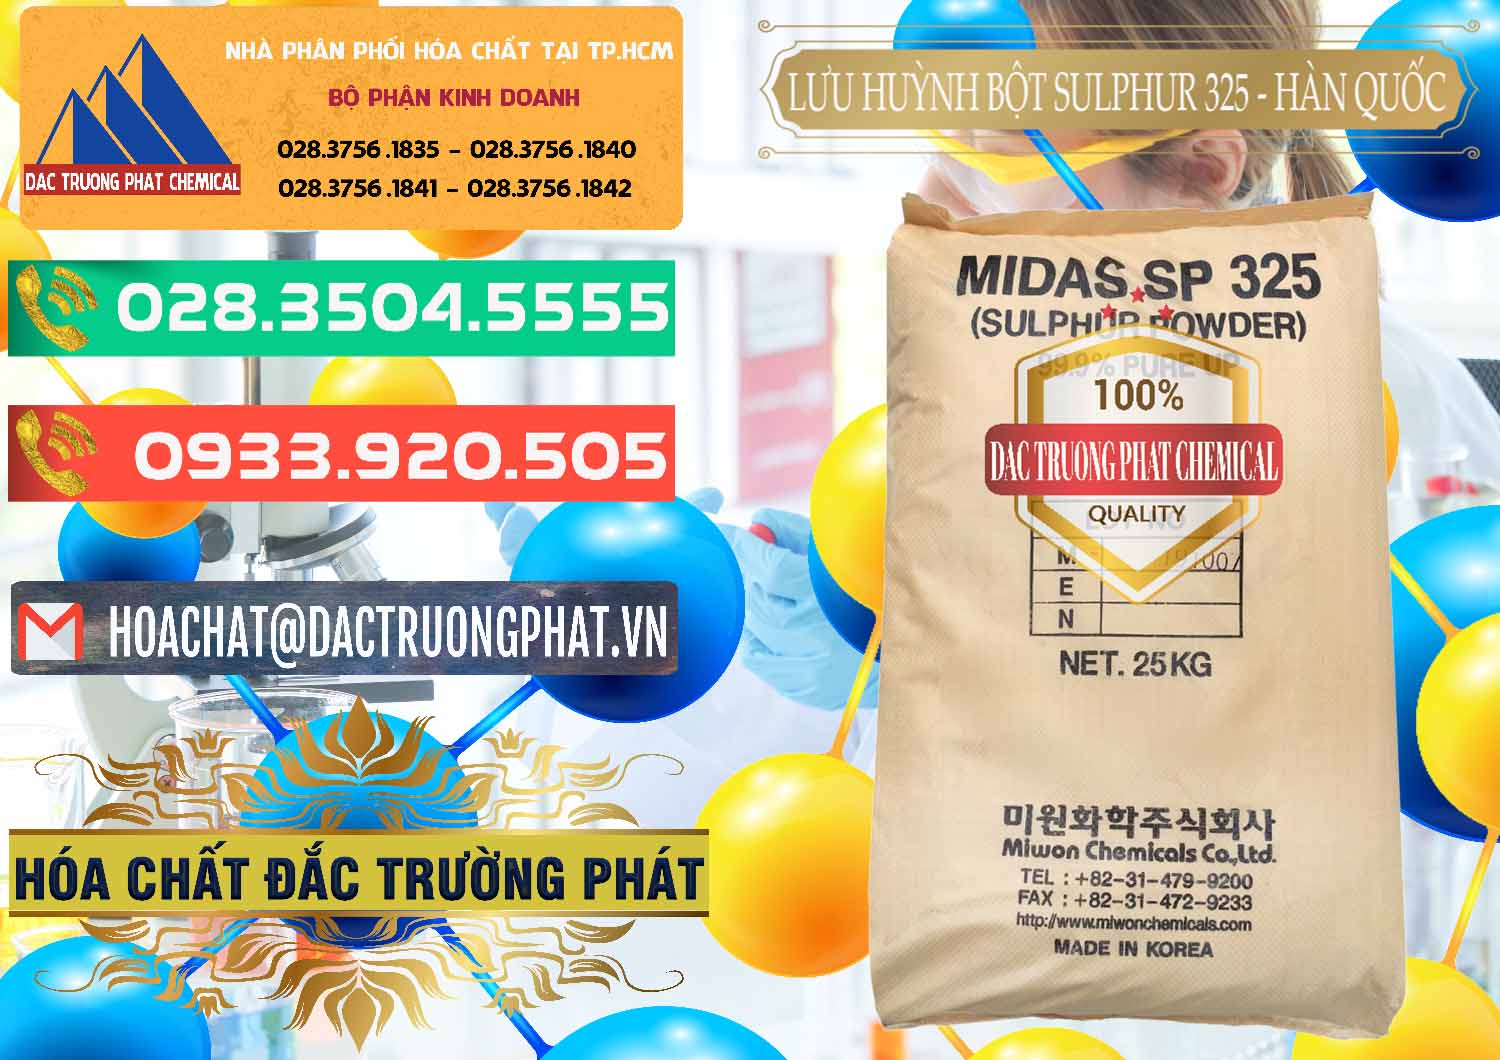 Bán và phân phối Lưu huỳnh Bột - Sulfur Powder Midas SP 325 Hàn Quốc Korea - 0198 - Nơi chuyên cung cấp và kinh doanh hóa chất tại TP.HCM - congtyhoachat.com.vn